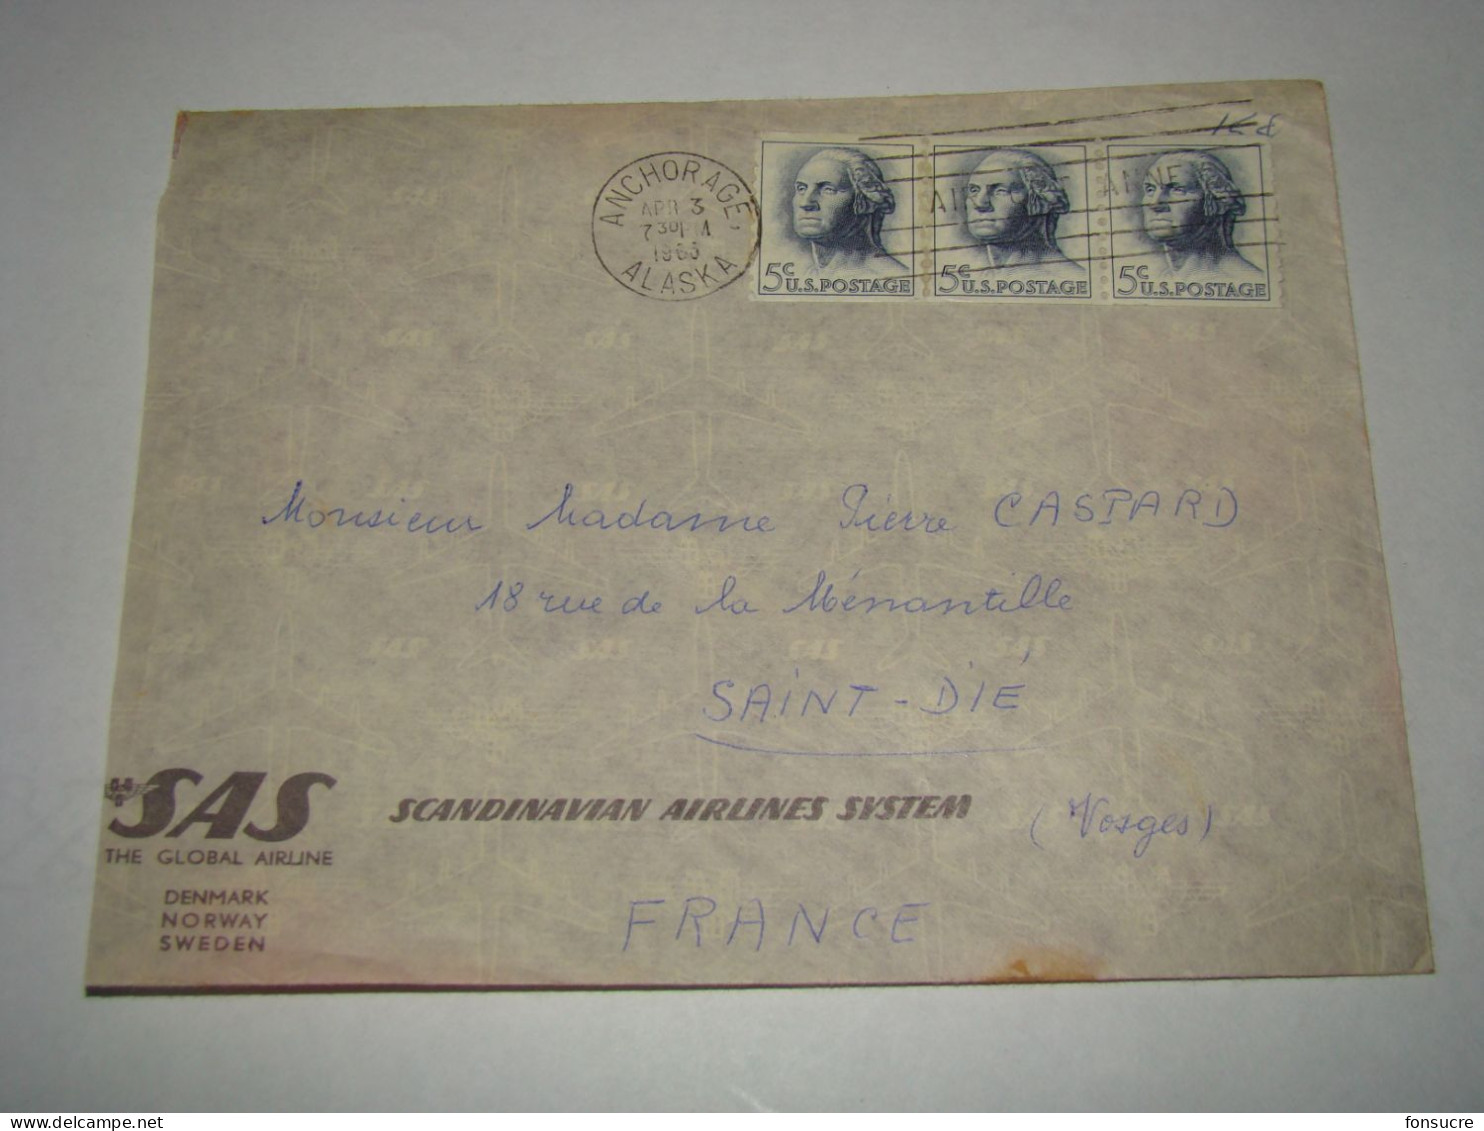 4536 Lettre Air Mail Par Avion SAS Scandinavian Airlines System Anchorage Alaska Bande De 3 Pour St Dié Vosges 3/4/66 - Lettres & Documents